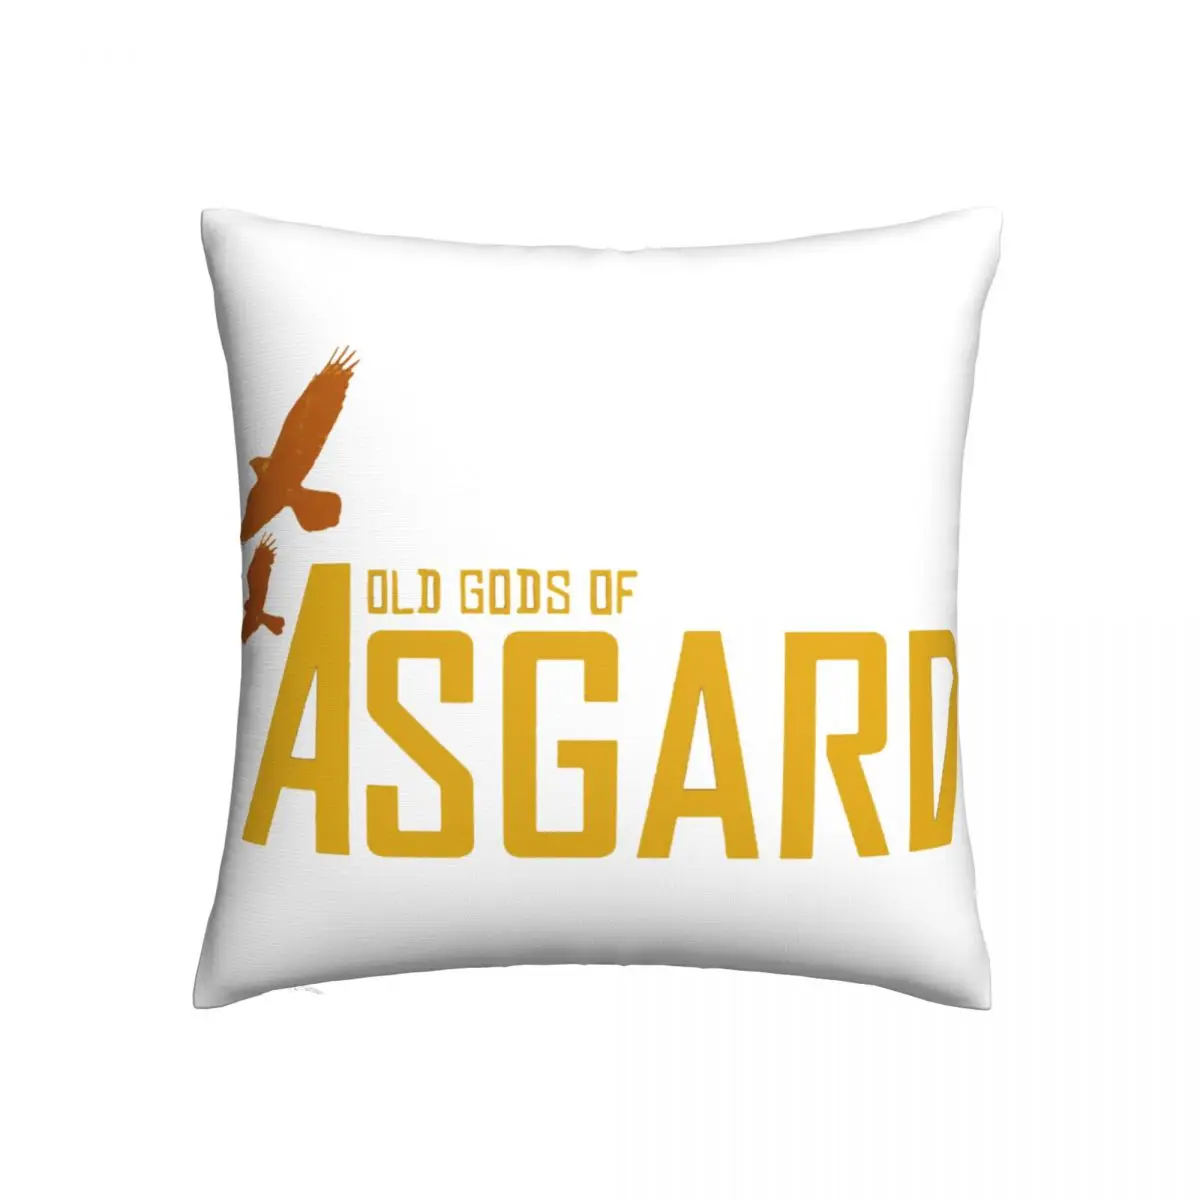 

Чехол с подушкой Асгард, чехол с изображением старых богов Асгарда, Подушка на молнии для спальни, Забавный Летний чехол из полиэстера